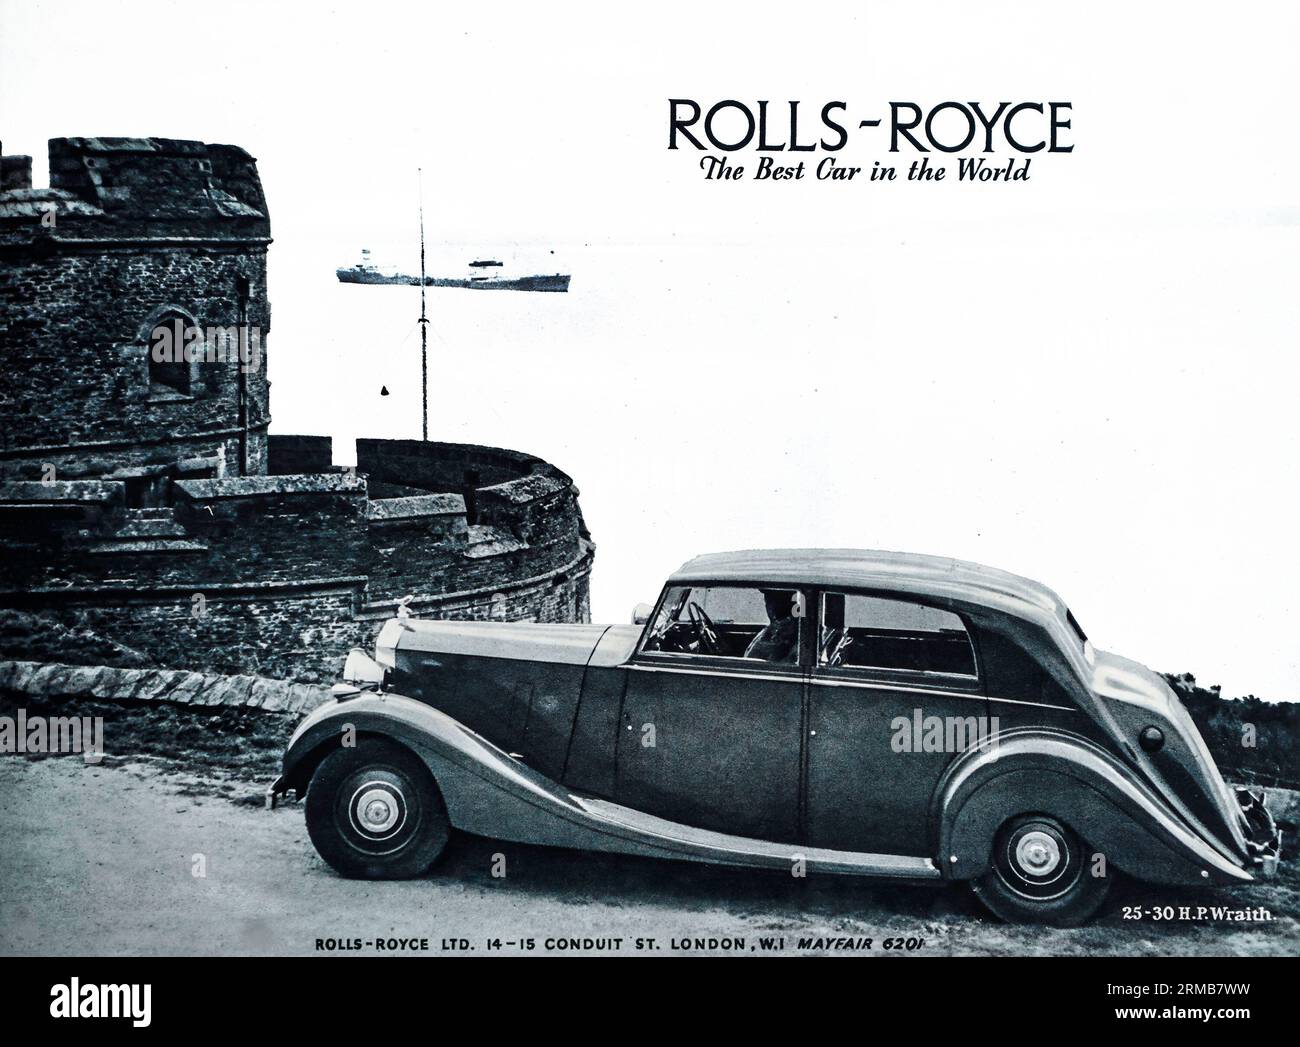 Una pubblicità in tempo di guerra del 1941 per Rolls Royce, 'The Best Car in the World'. Rolls Royce ha dato il loro indirizzo come Conduit Street, Londra. Foto Stock